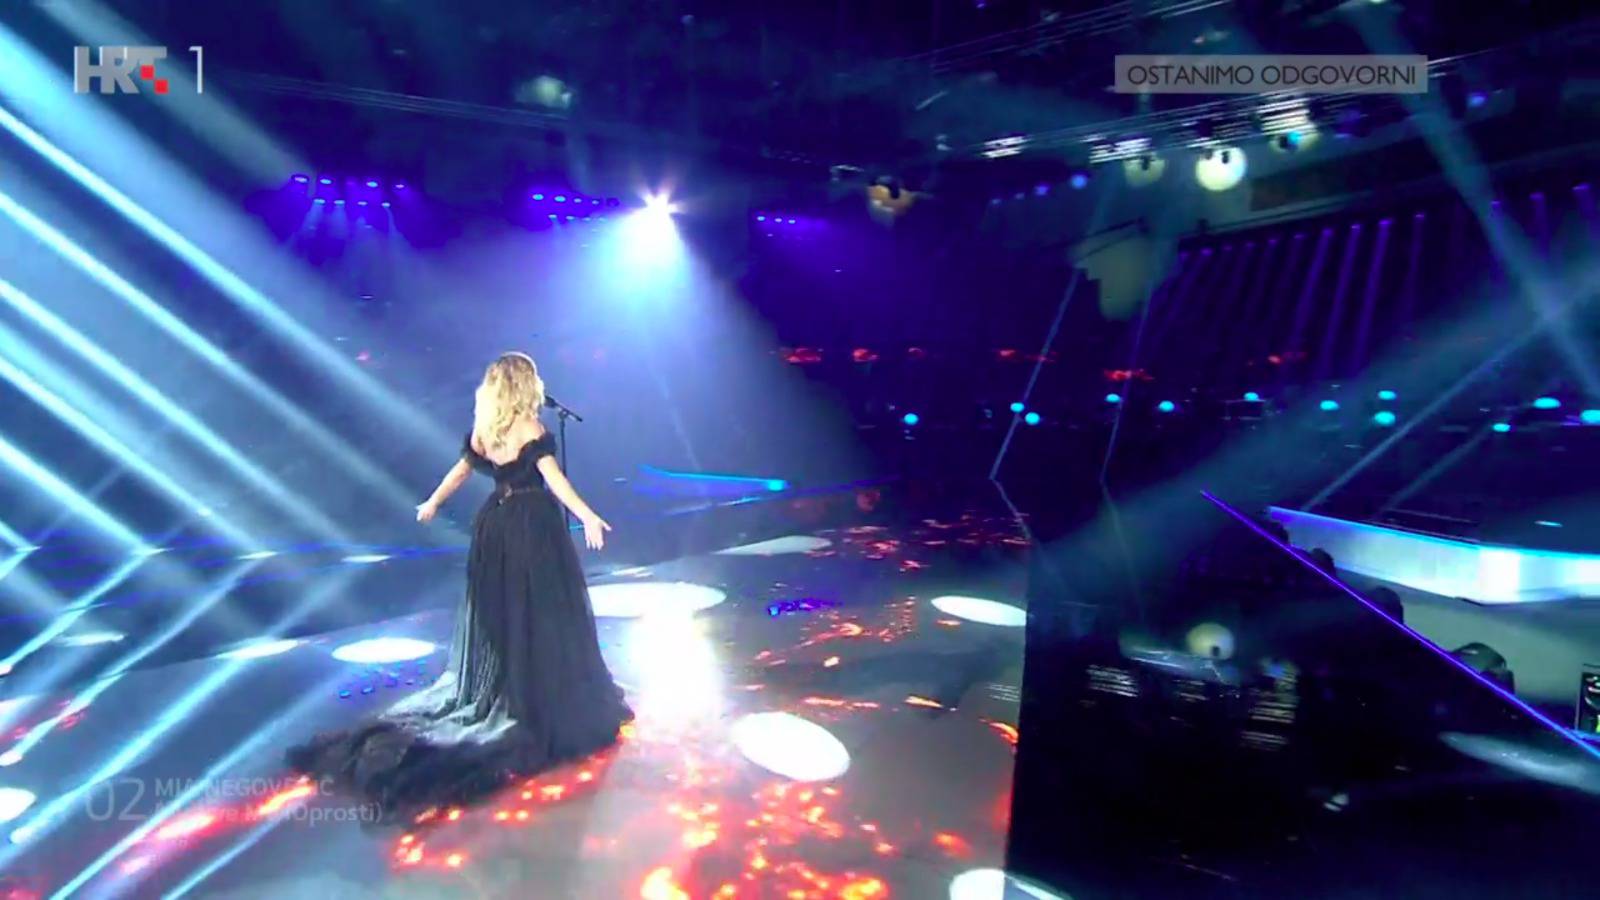 Mia Negovetić pjevala je u crnoj dugoj haljini, a tijekom nastupa nije mogla suspregnuti suze